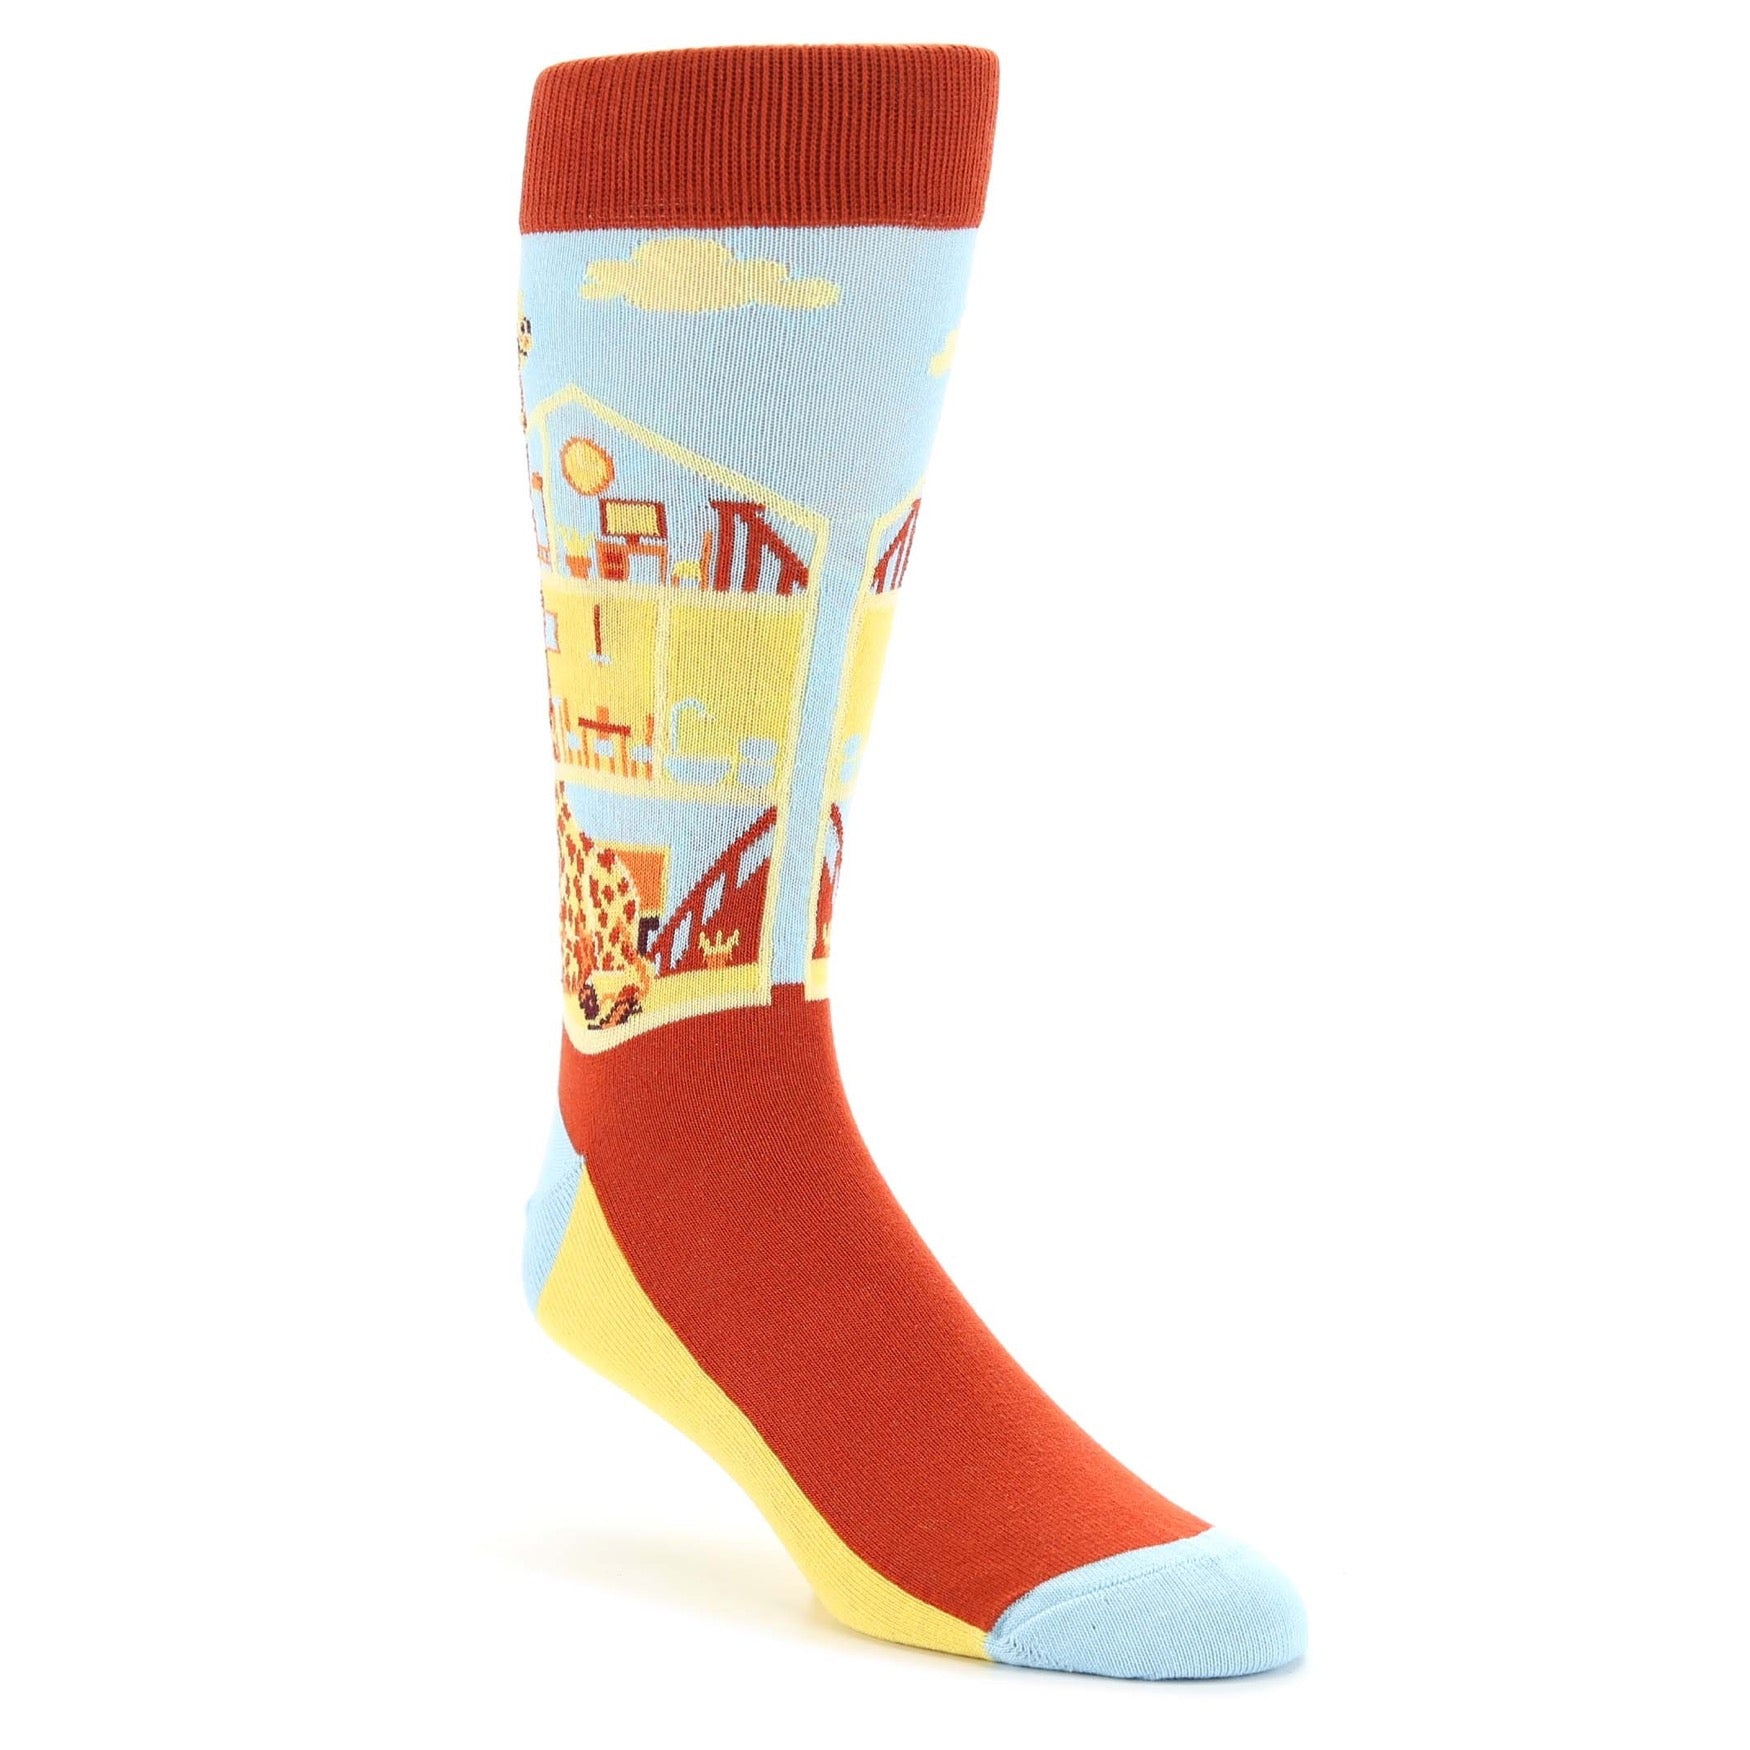 Giraffters Giraffe Socks - Men's Novelty Dress Socks